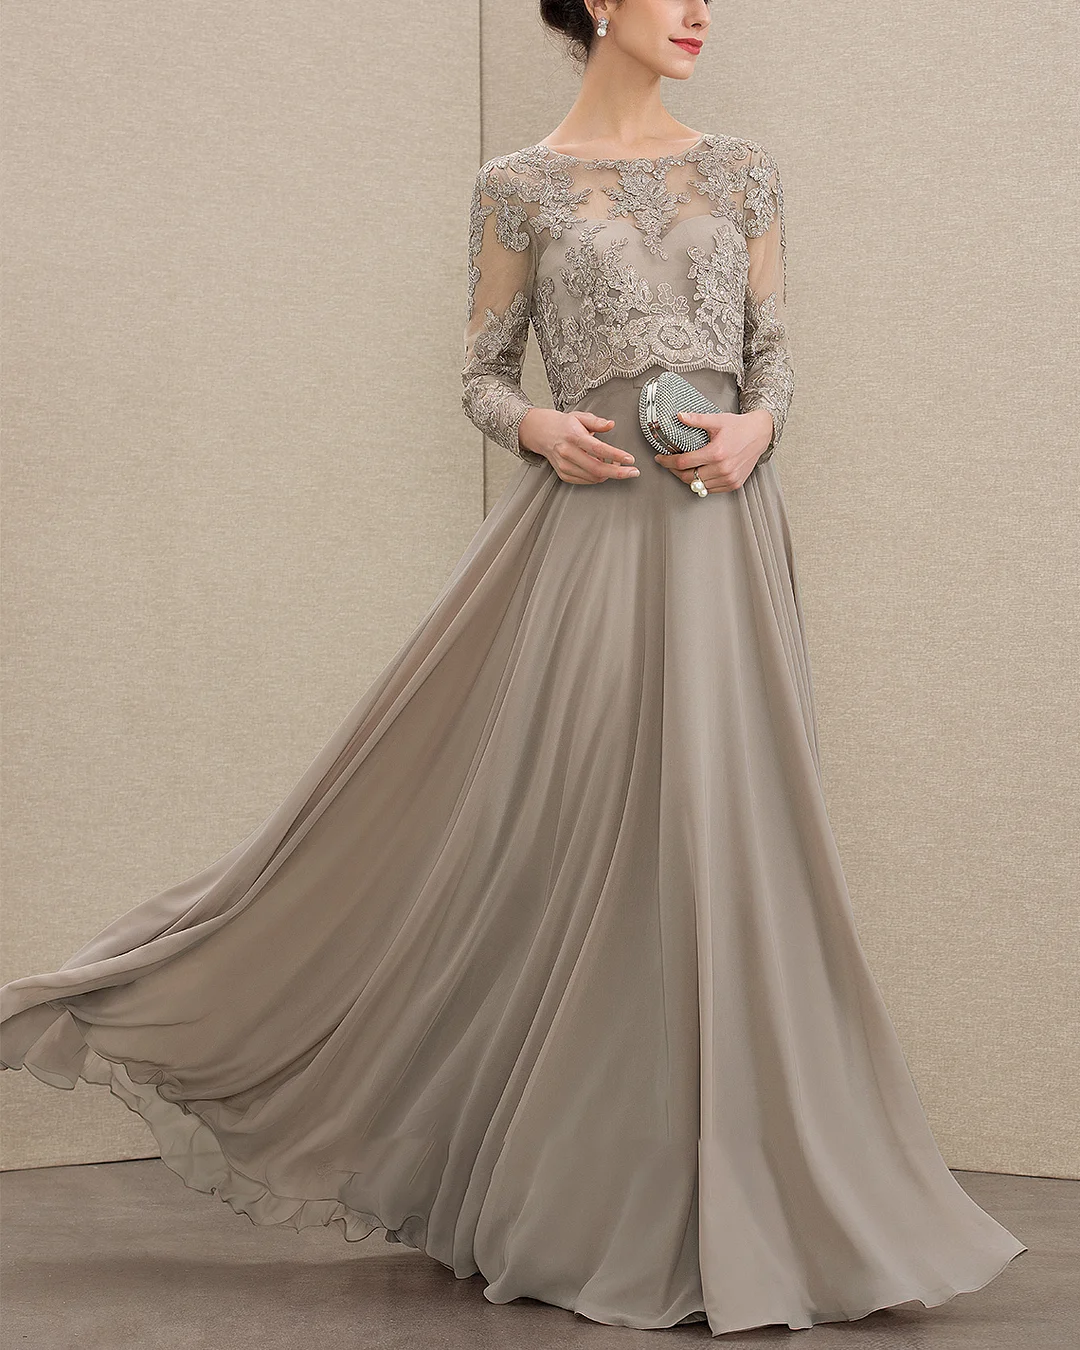 Elegant Fashion Lace Sequin 2 Piece Dress